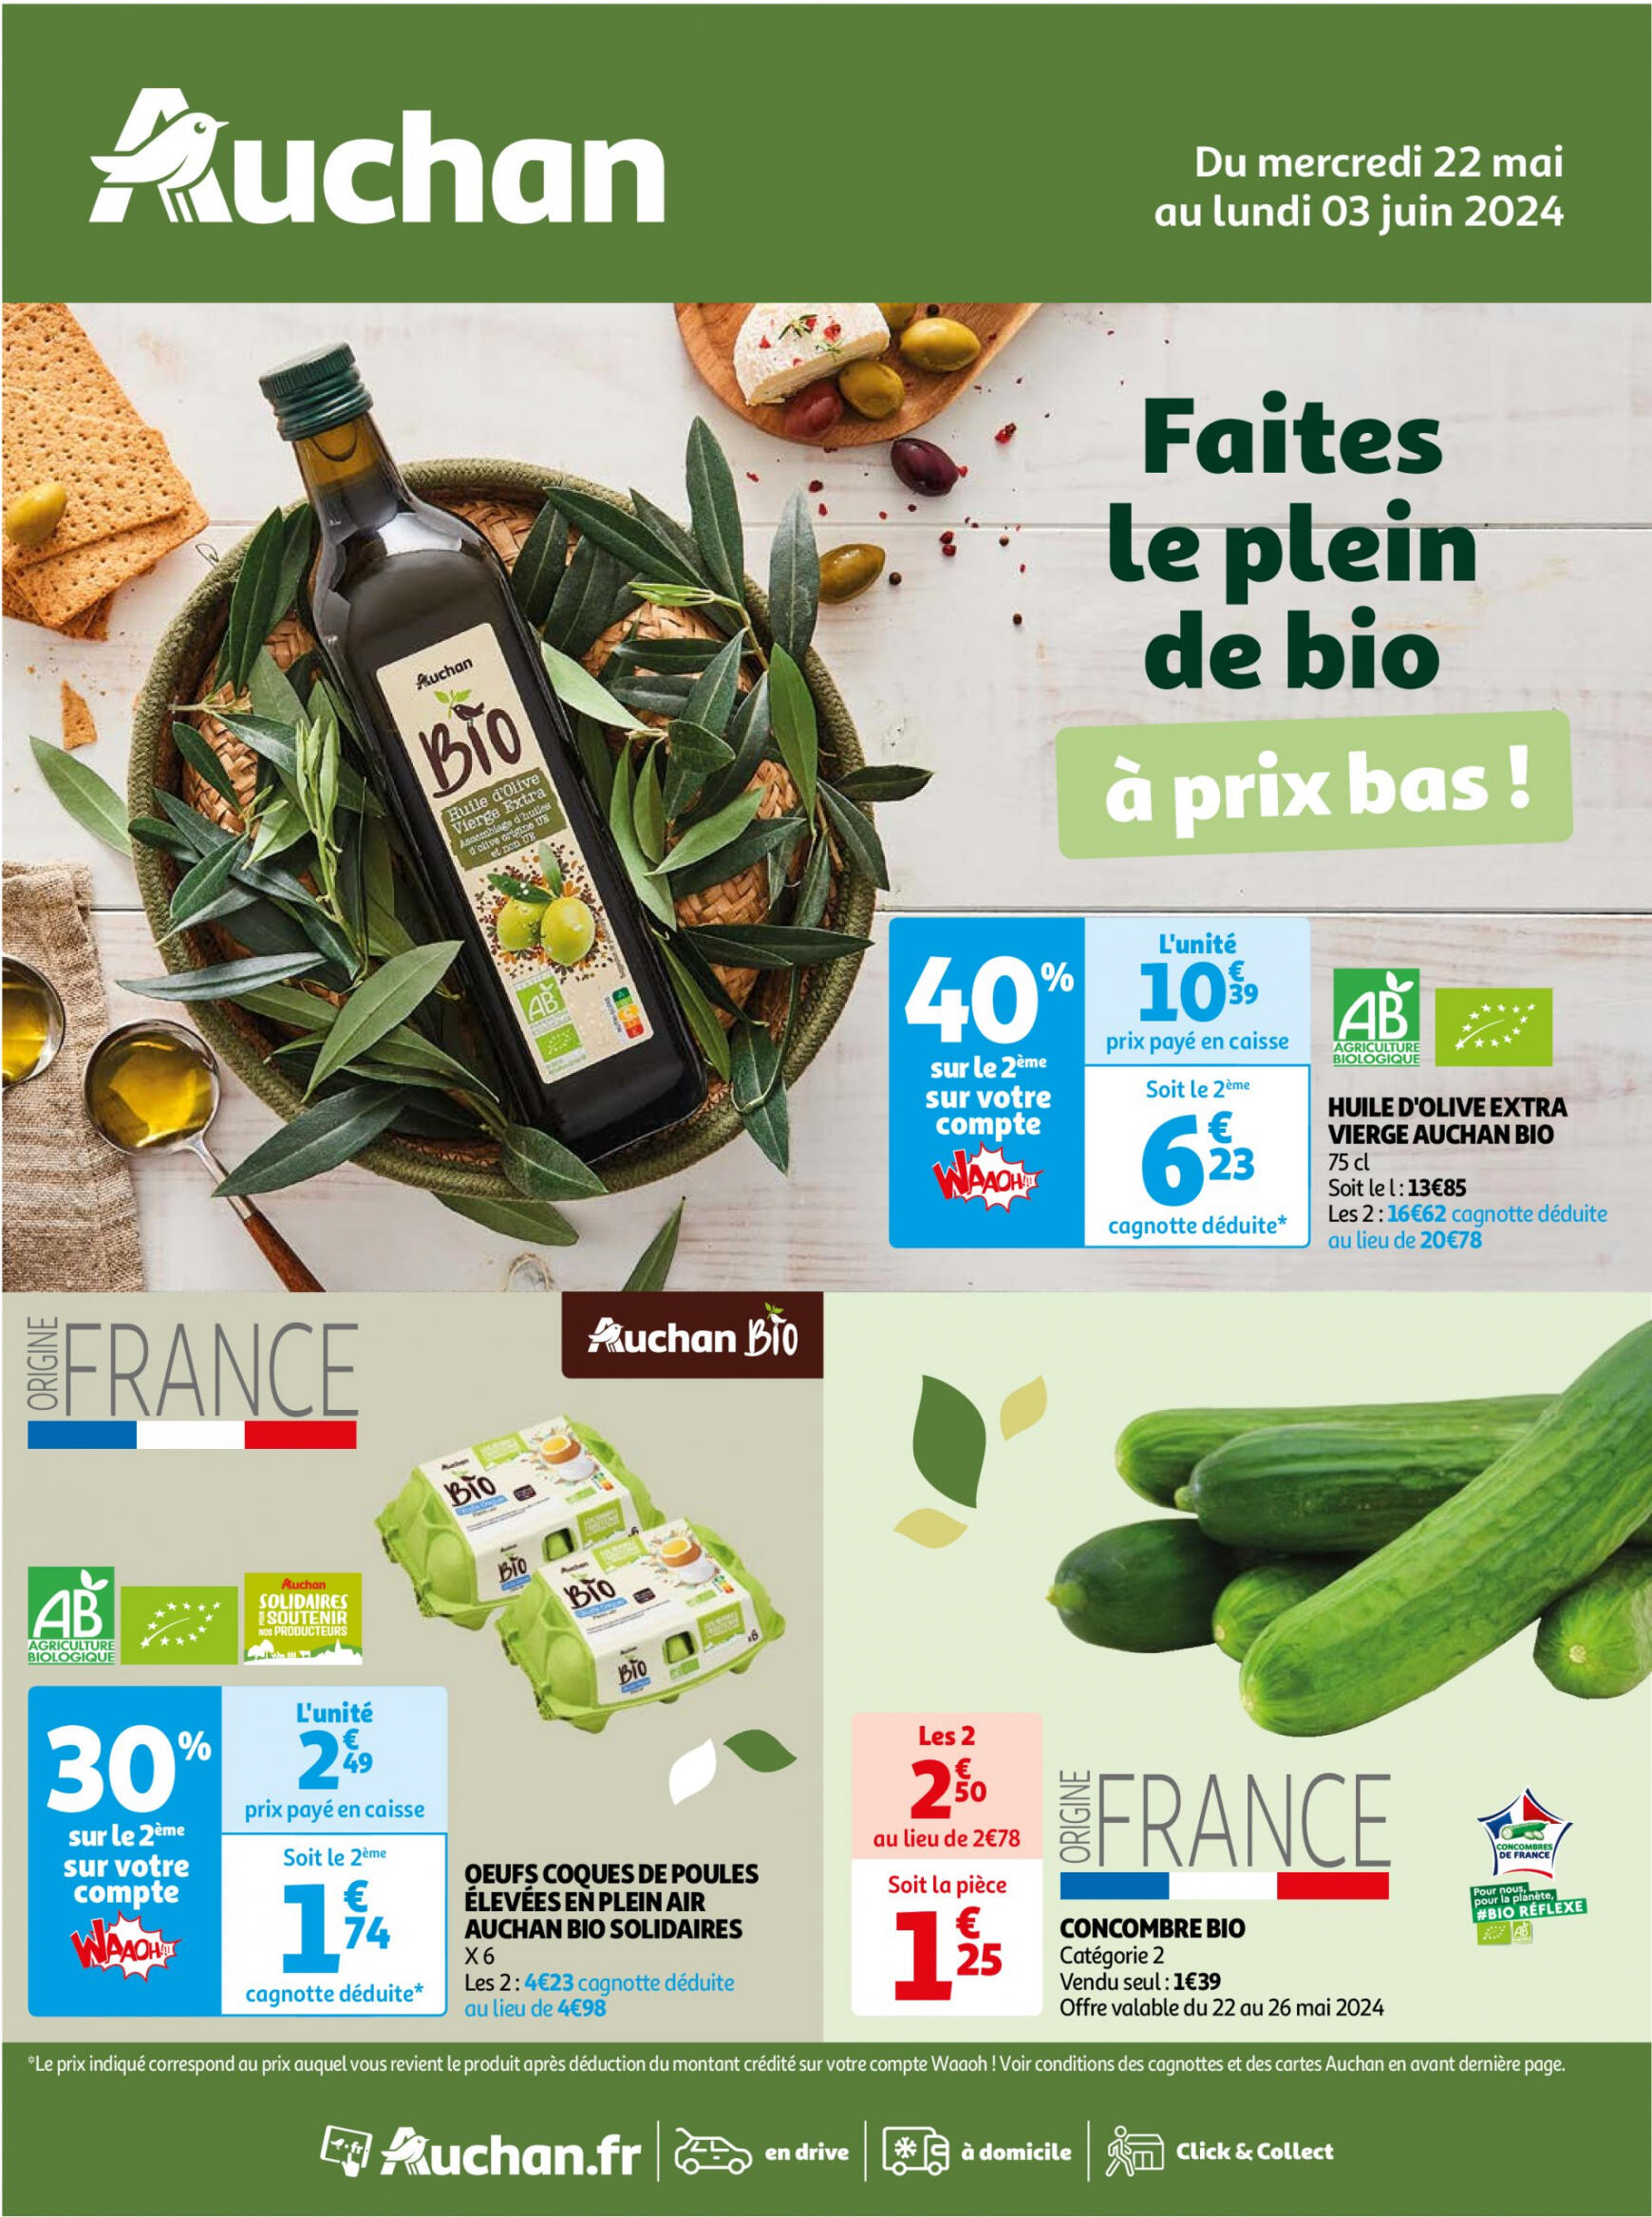 auchan - Auchan - Faites le plein de bio à prix bas folder huidig 22.05. - 03.06.